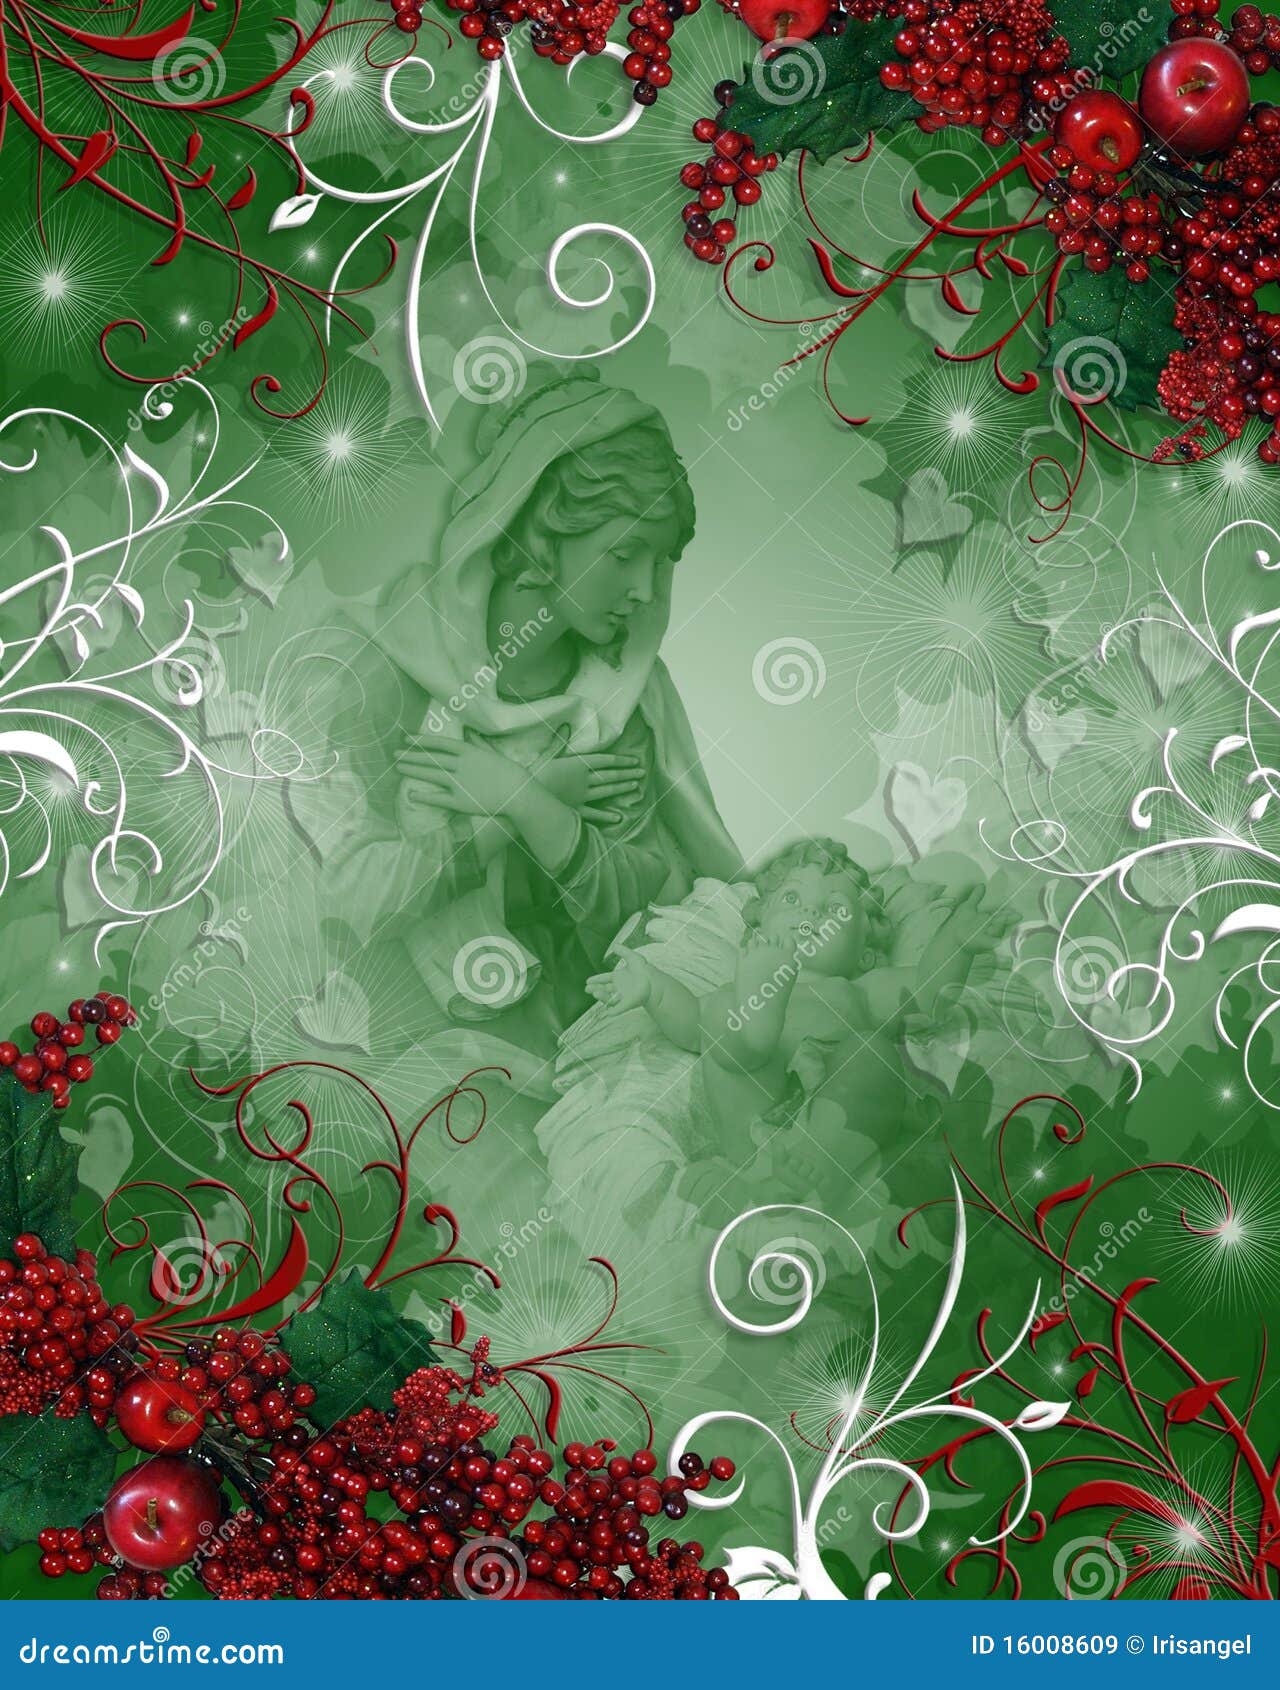 Thưởng thức những hình minh họa nền Giáng sinh Thiên Chúa giáo đầy cảm xúc sẽ giúp bạn truyền tải thông điệp yêu thương và sự kính trọng đến với người thân và bạn bè trong mùa lễ này. Hãy cùng nhau trải nghiệm không khí Giáng sinh ấm áp và tràn đầy hy vọng!